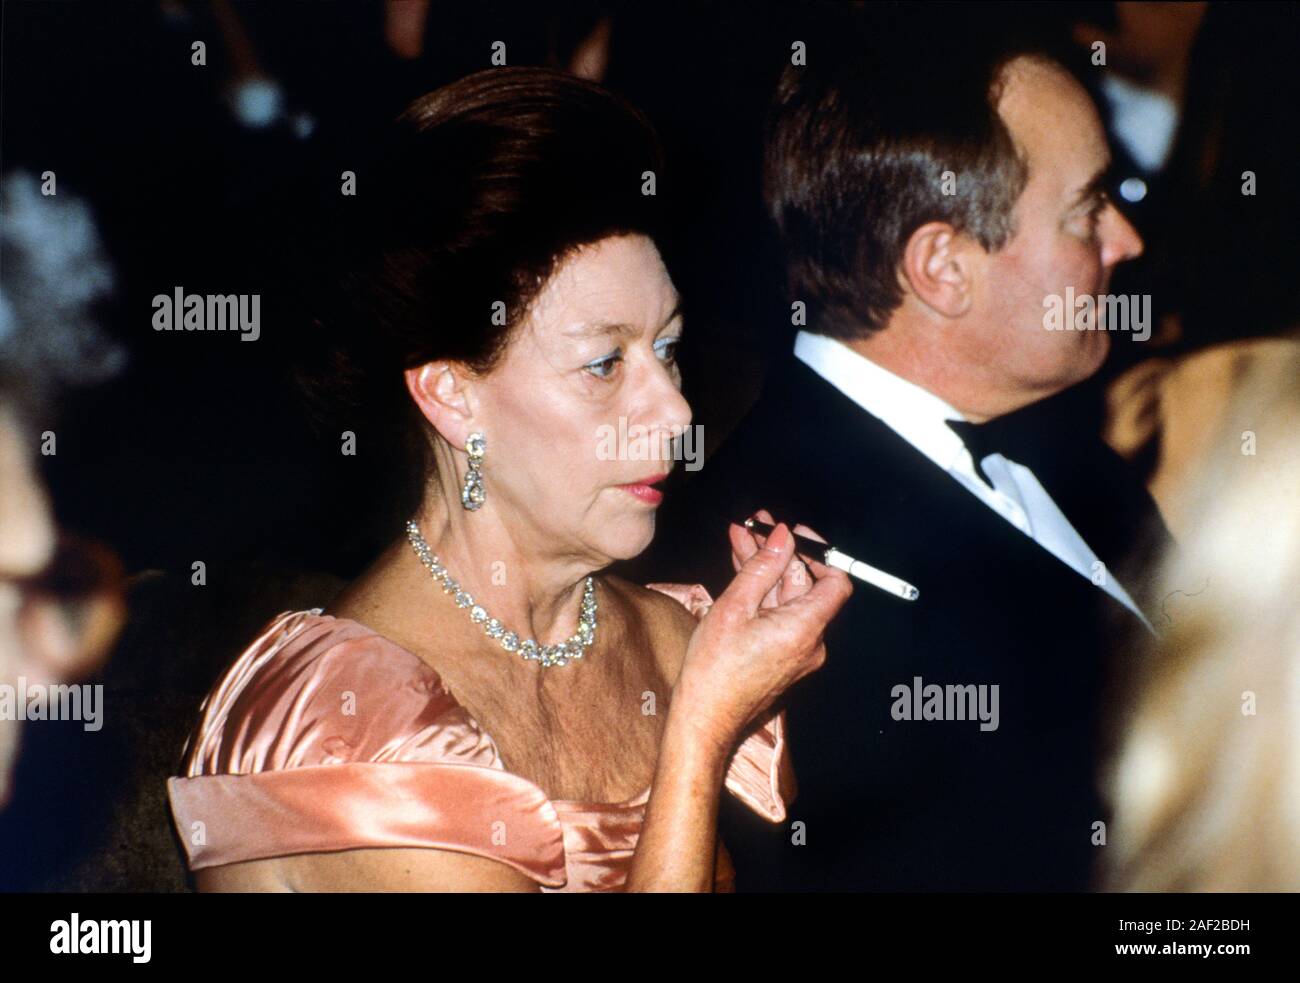 Son Altesse Royale la princesse Margaret fumeurs au dîner de crise du sida Trust, Londres, Angleterre, Novembre 1991 Banque D'Images